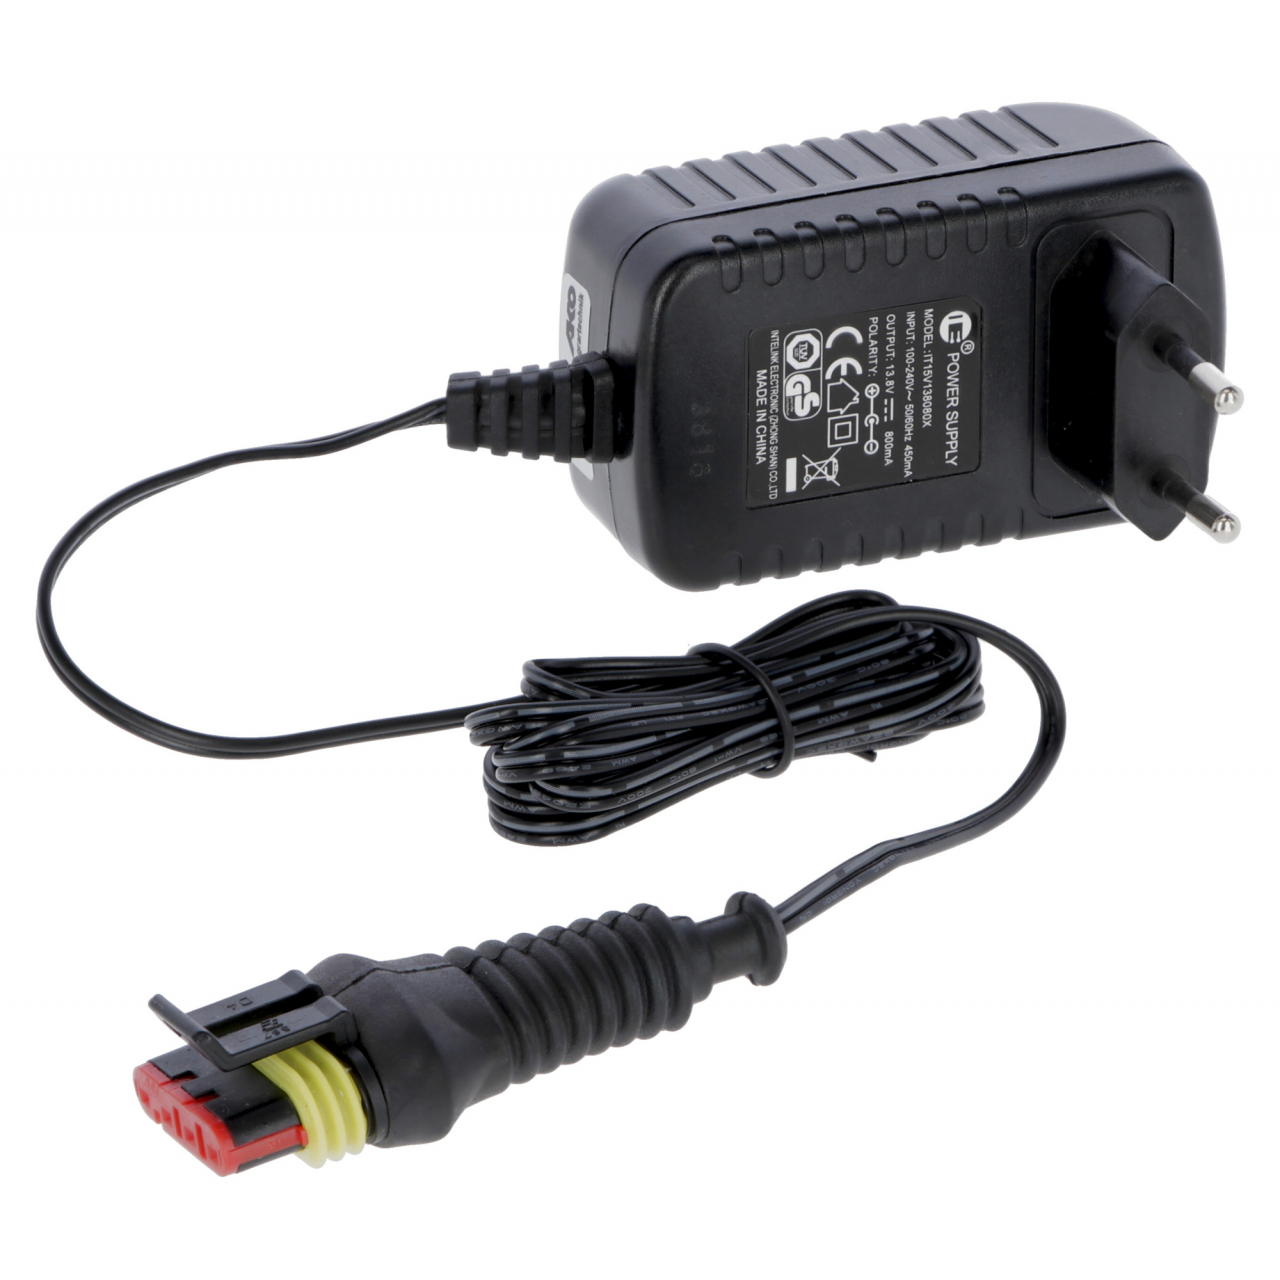 Hálózati adapter FenceCONTROL rendszerhez (mobil felügyelet és vezérlés villanypásztor rendszerekhez)